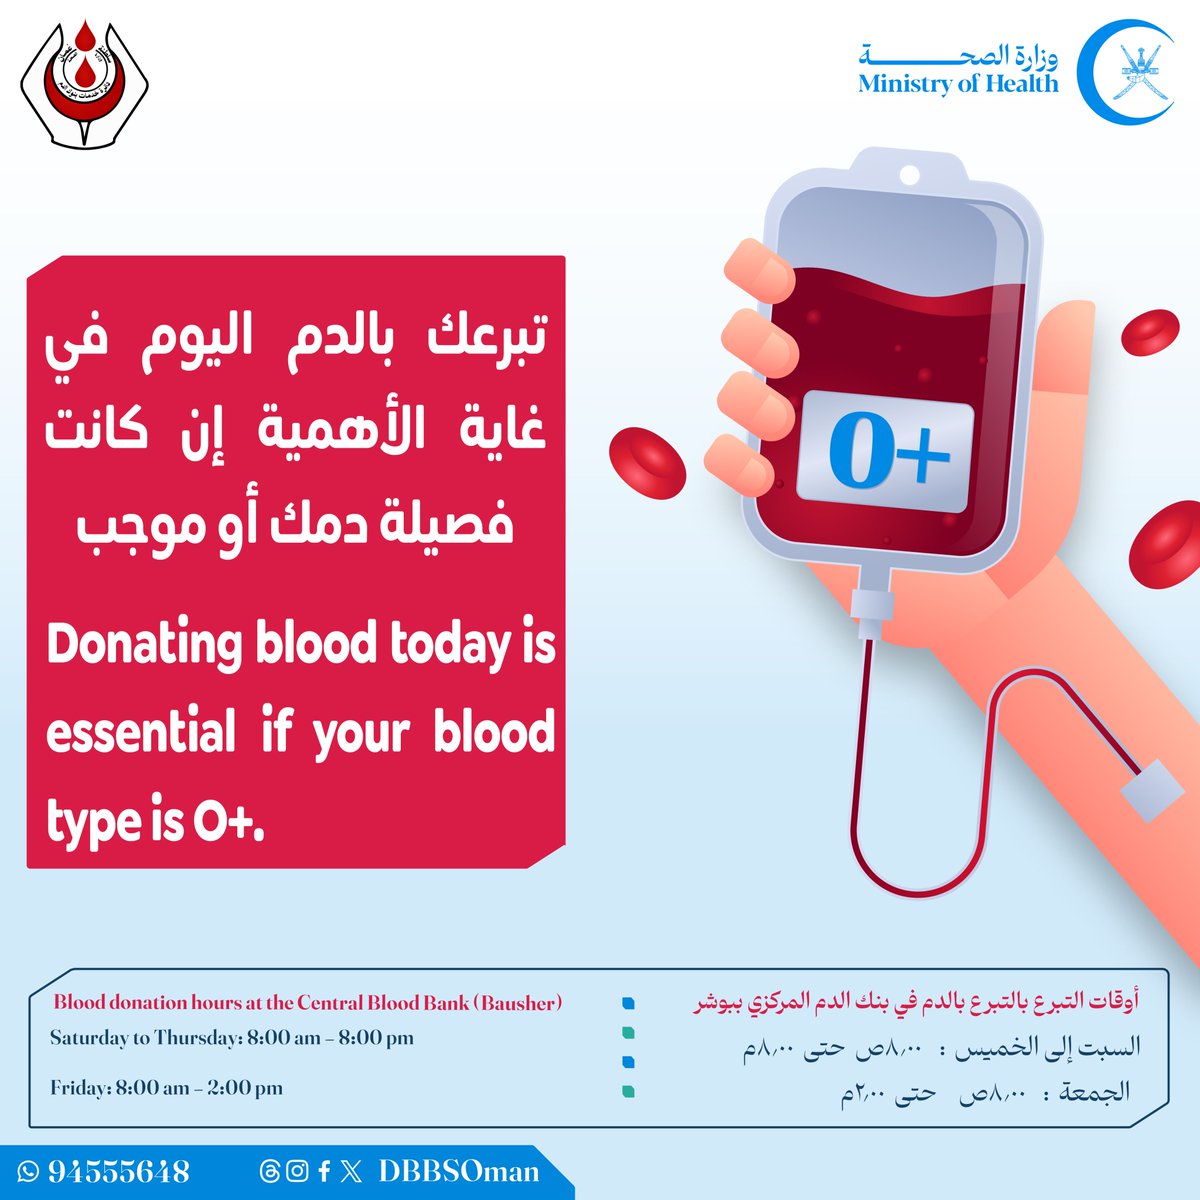 تبرعك بالدم اليوم في غاية الأهمية إن كانت فصيلة دمك أو موجب. Donating blood today is essential if your blood type is O+.